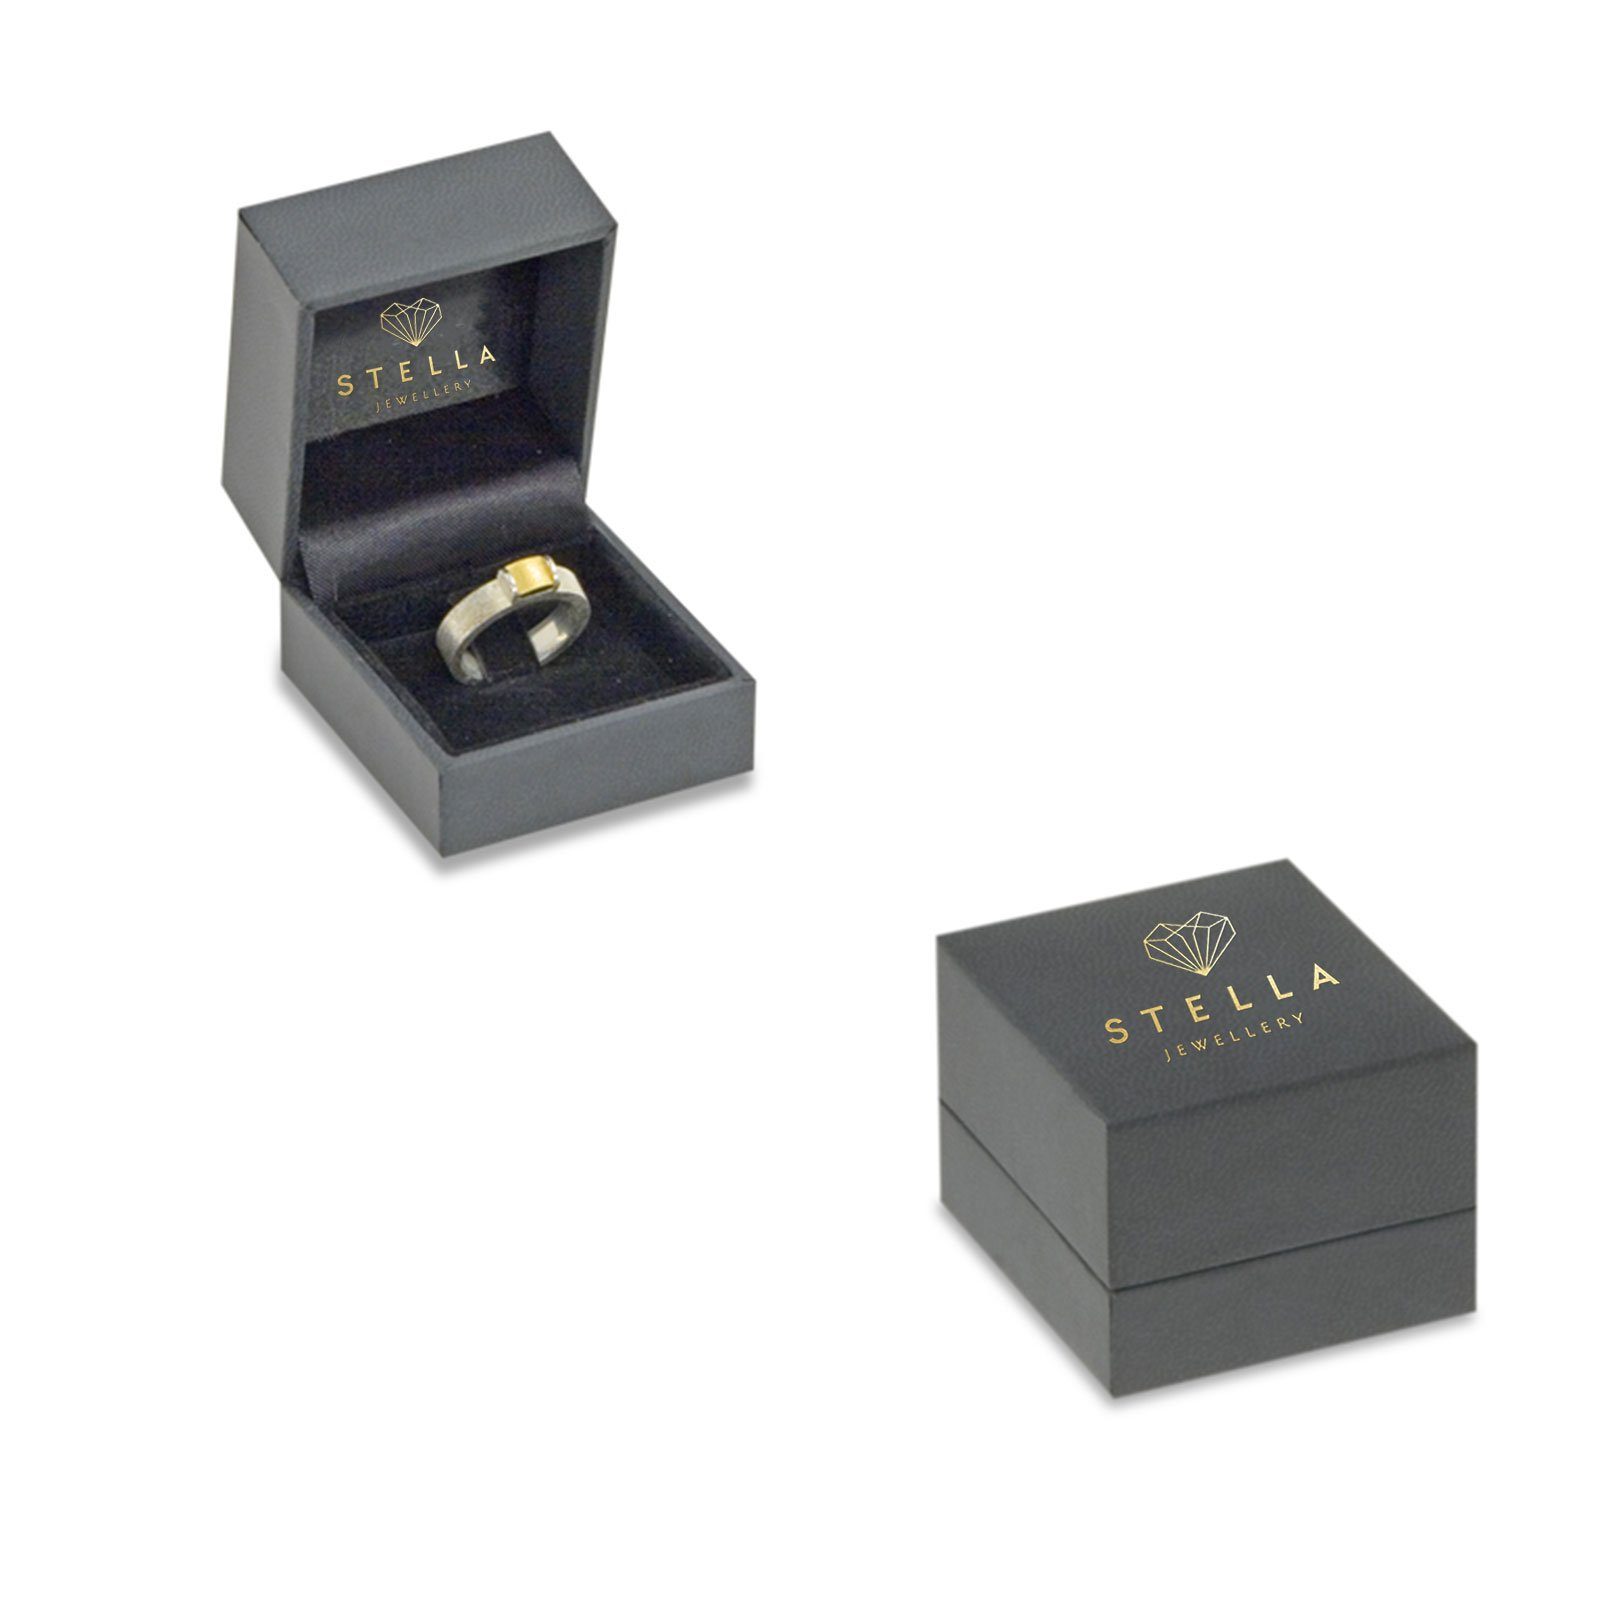 Herren Schmuck Stella-Jewellery Verlobungsring 585er Gelbgold Spannring mit Diamant Gr. 54 (inkl. Etui), mit Brillant 0,05ct. - 